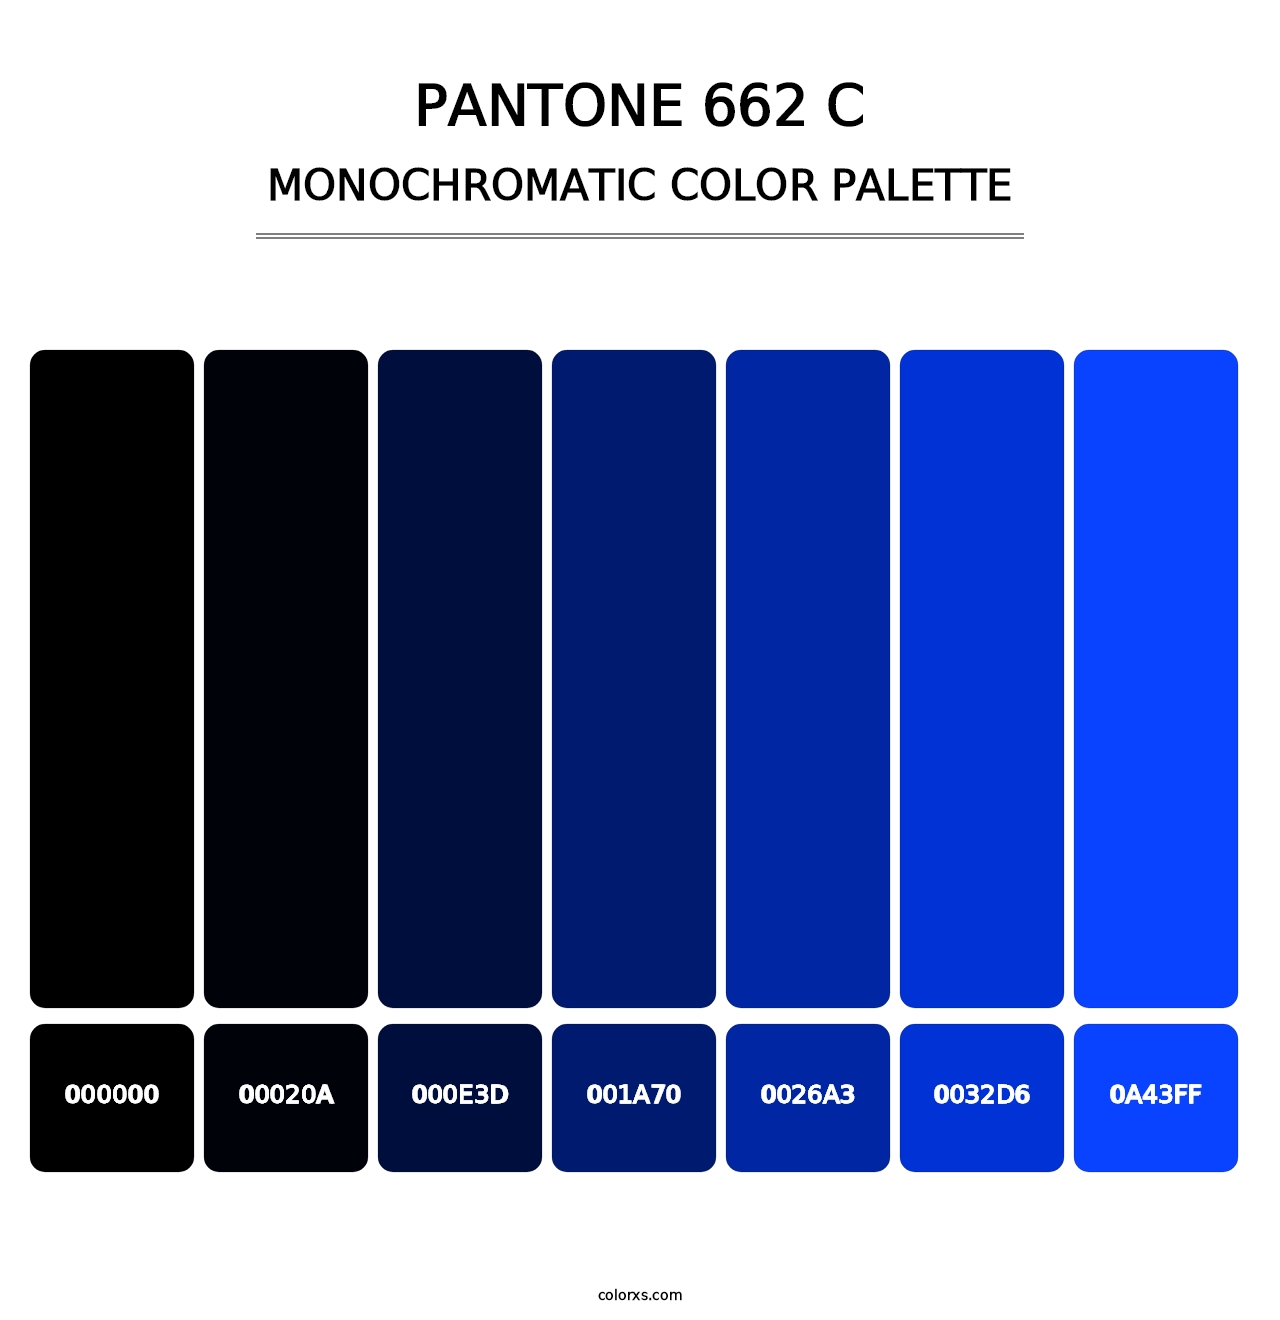 PANTONE 662 C - Monochromatic Color Palette